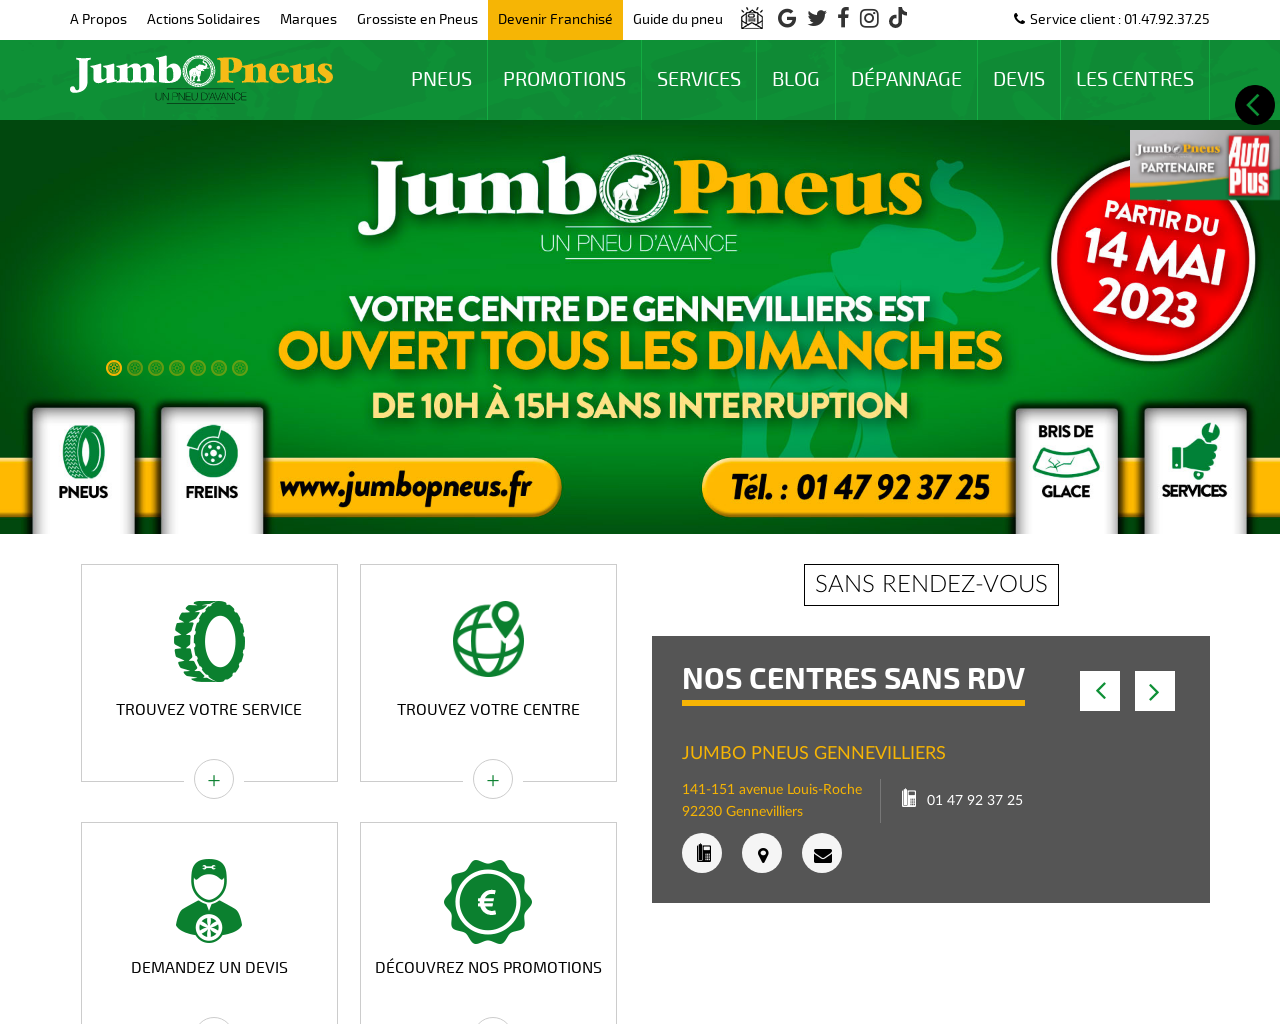 www.jumbopneus.fr